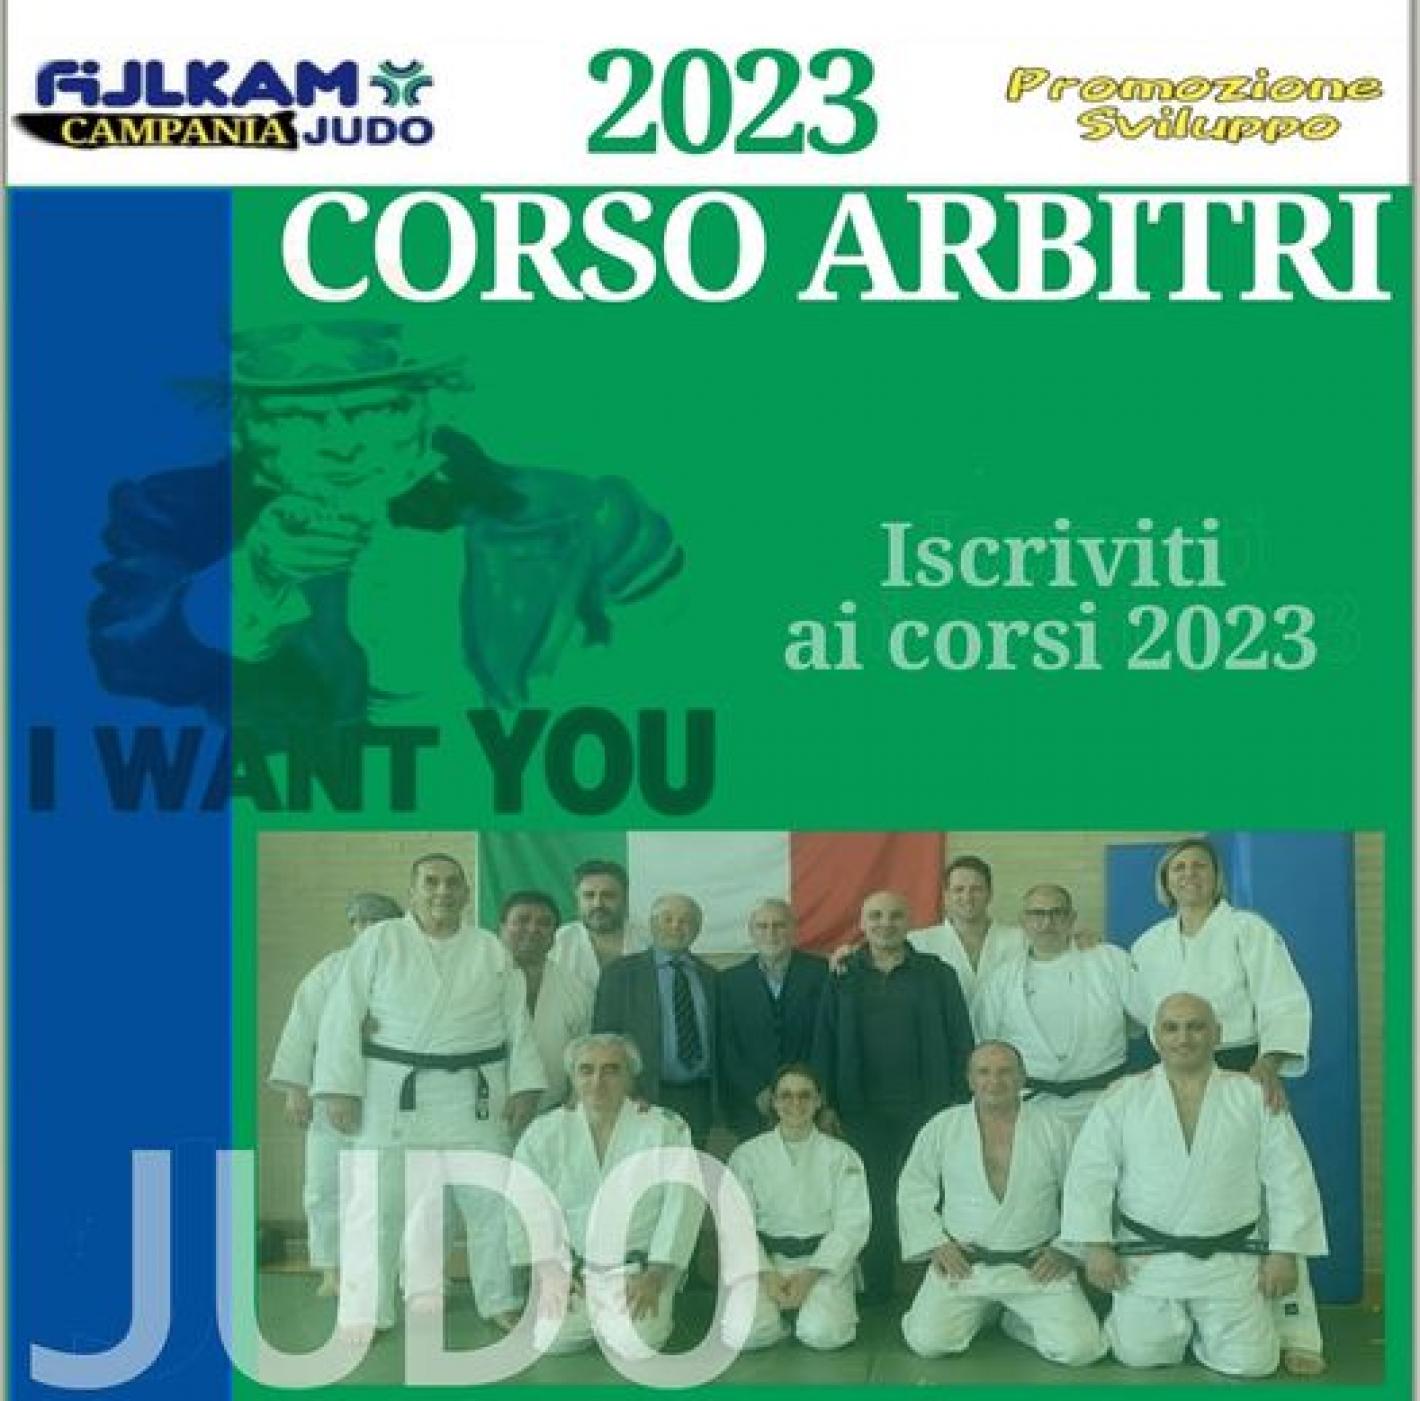 images/campania/campania2023/judo/giugno/CORSO_ARBITRI/medium/CORSO.jpg